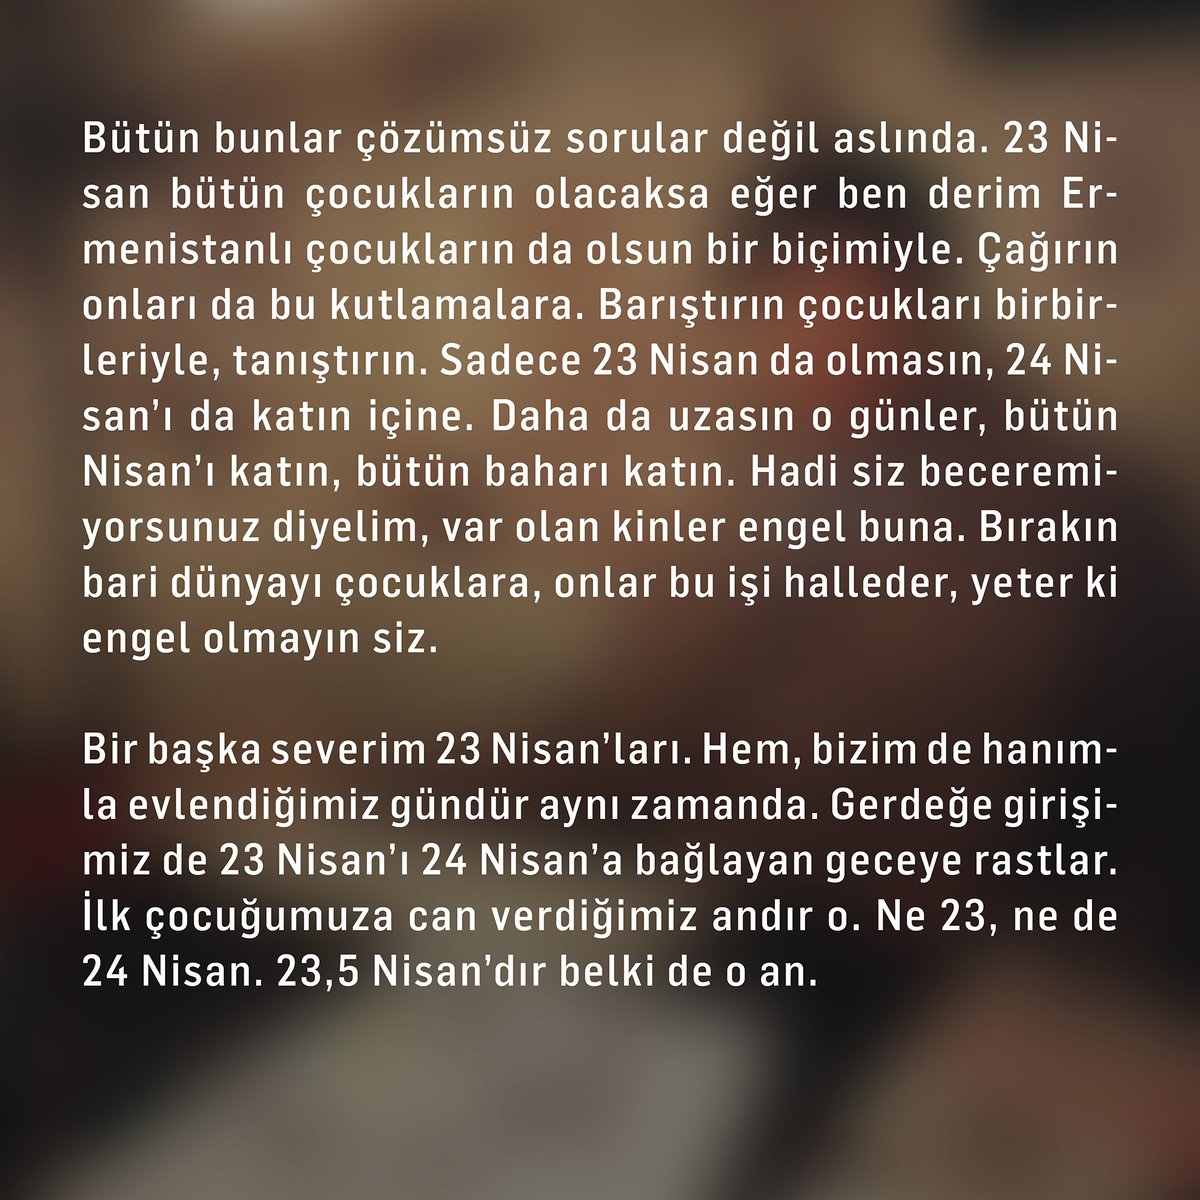 Hrant Dink'in, 23 Nisan 1996'da yayımlanan ve 23,5 Hrant Dink Hafıza Mekânı'nın ismine de ilham olan '23,5 Nisan' yazısını okumak için ⬇️